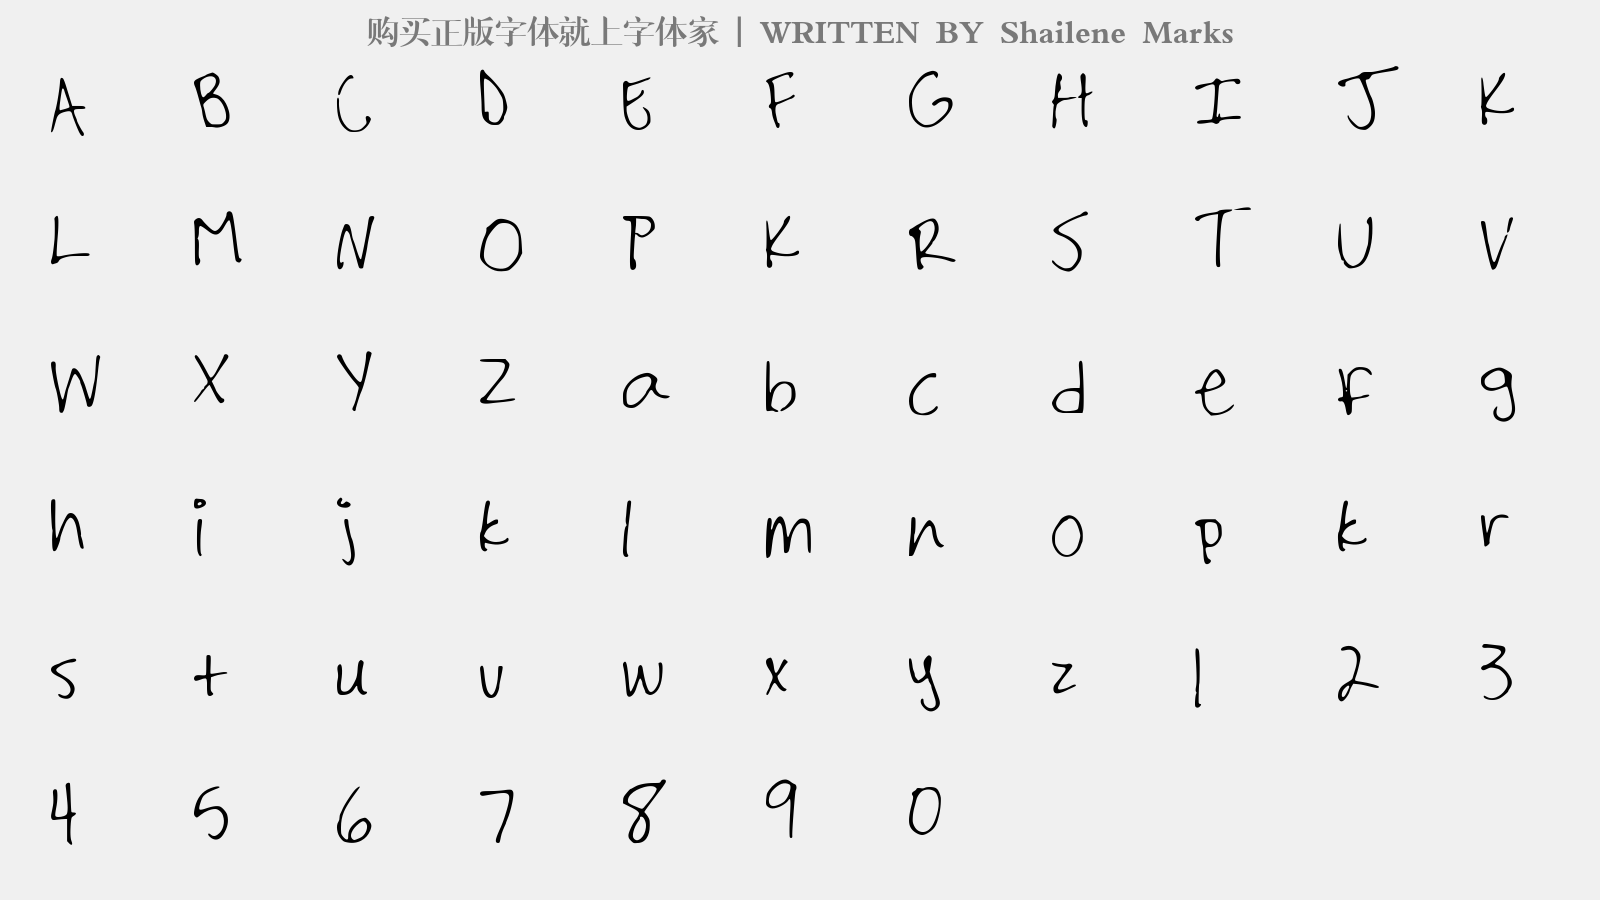 Shailene Marks - 大写字母/小写字母/数字